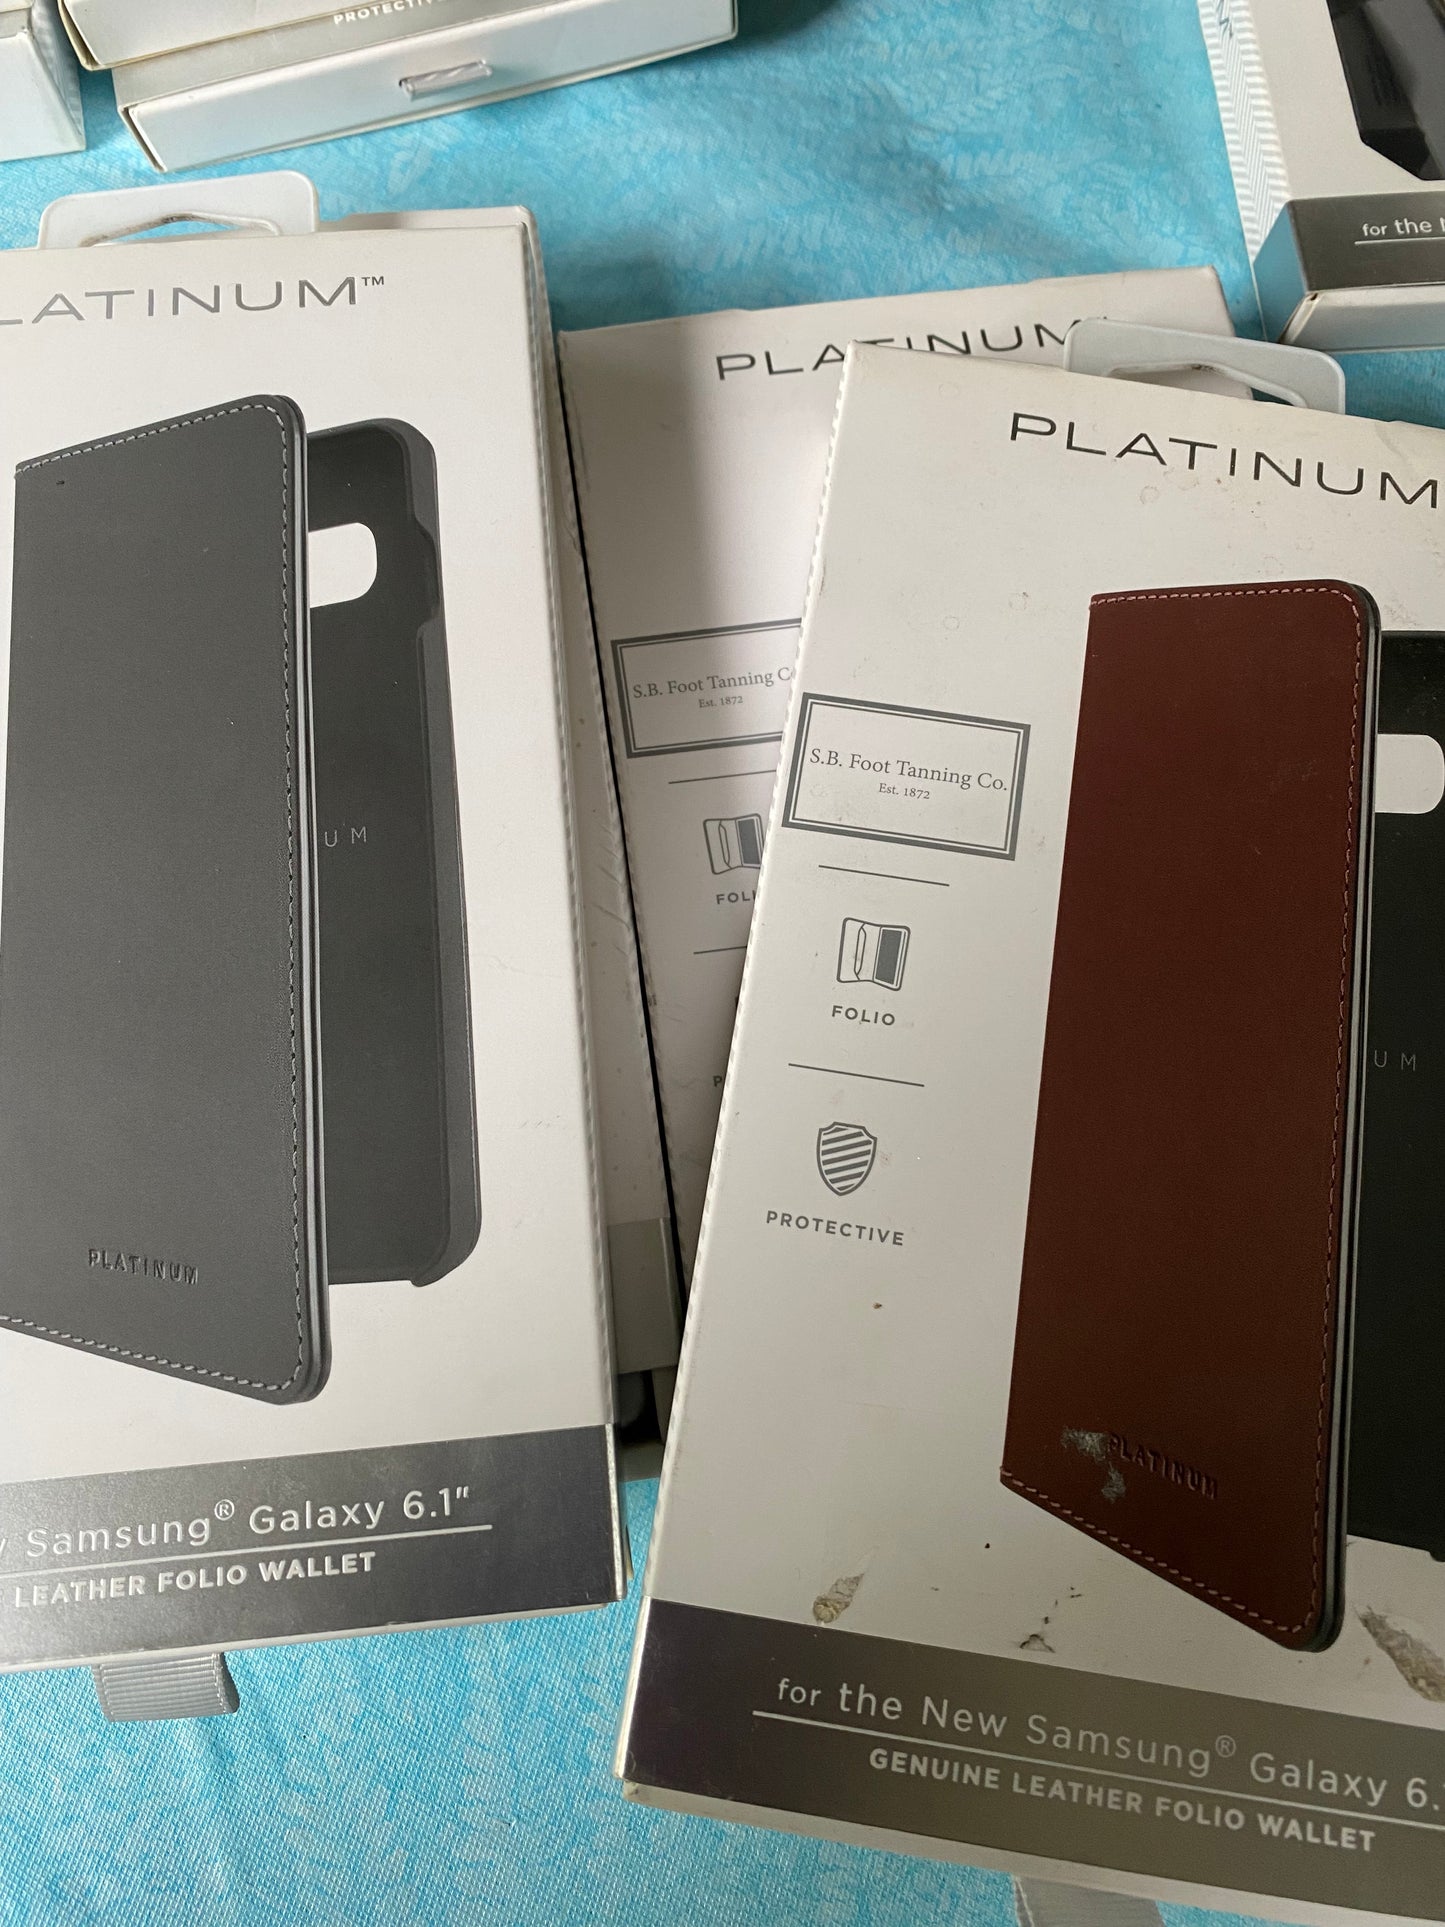 Platinum Smartphone Cases